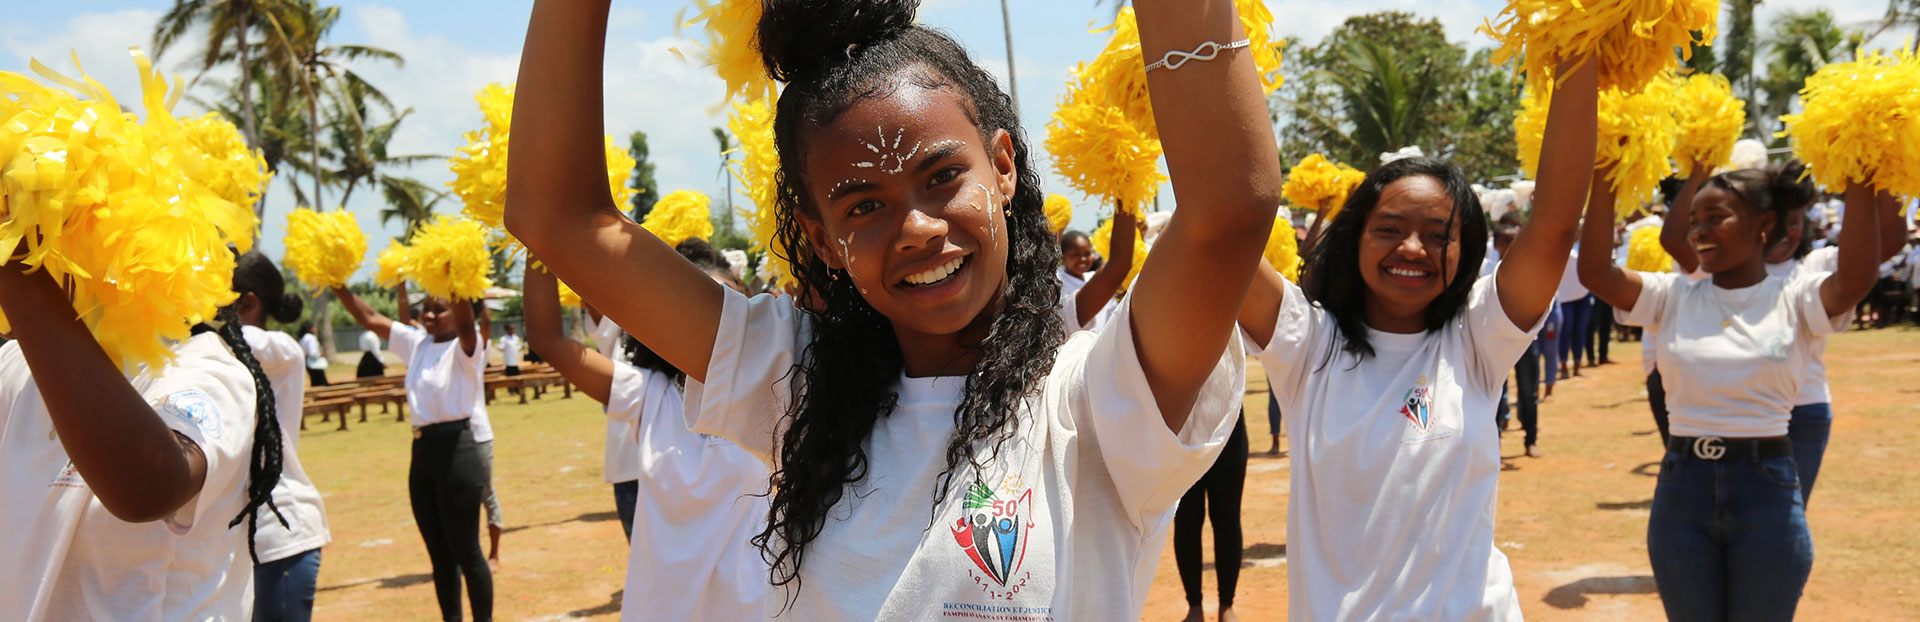 Madagascar: La educación jesuita también en el sur de la isla